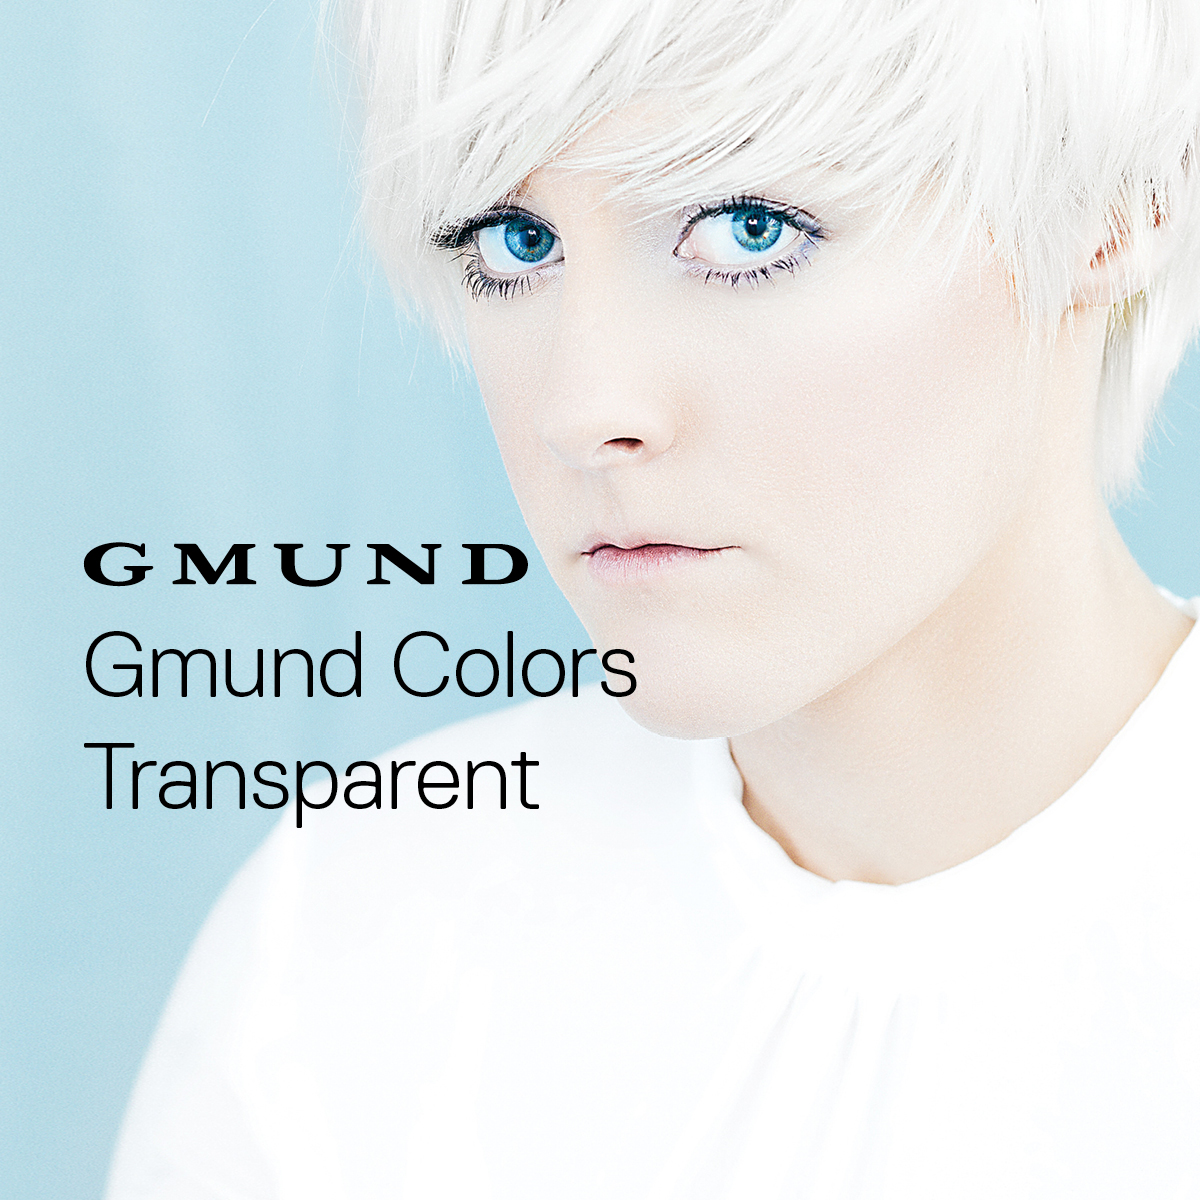 Gmund Colors Transparent - Compendium